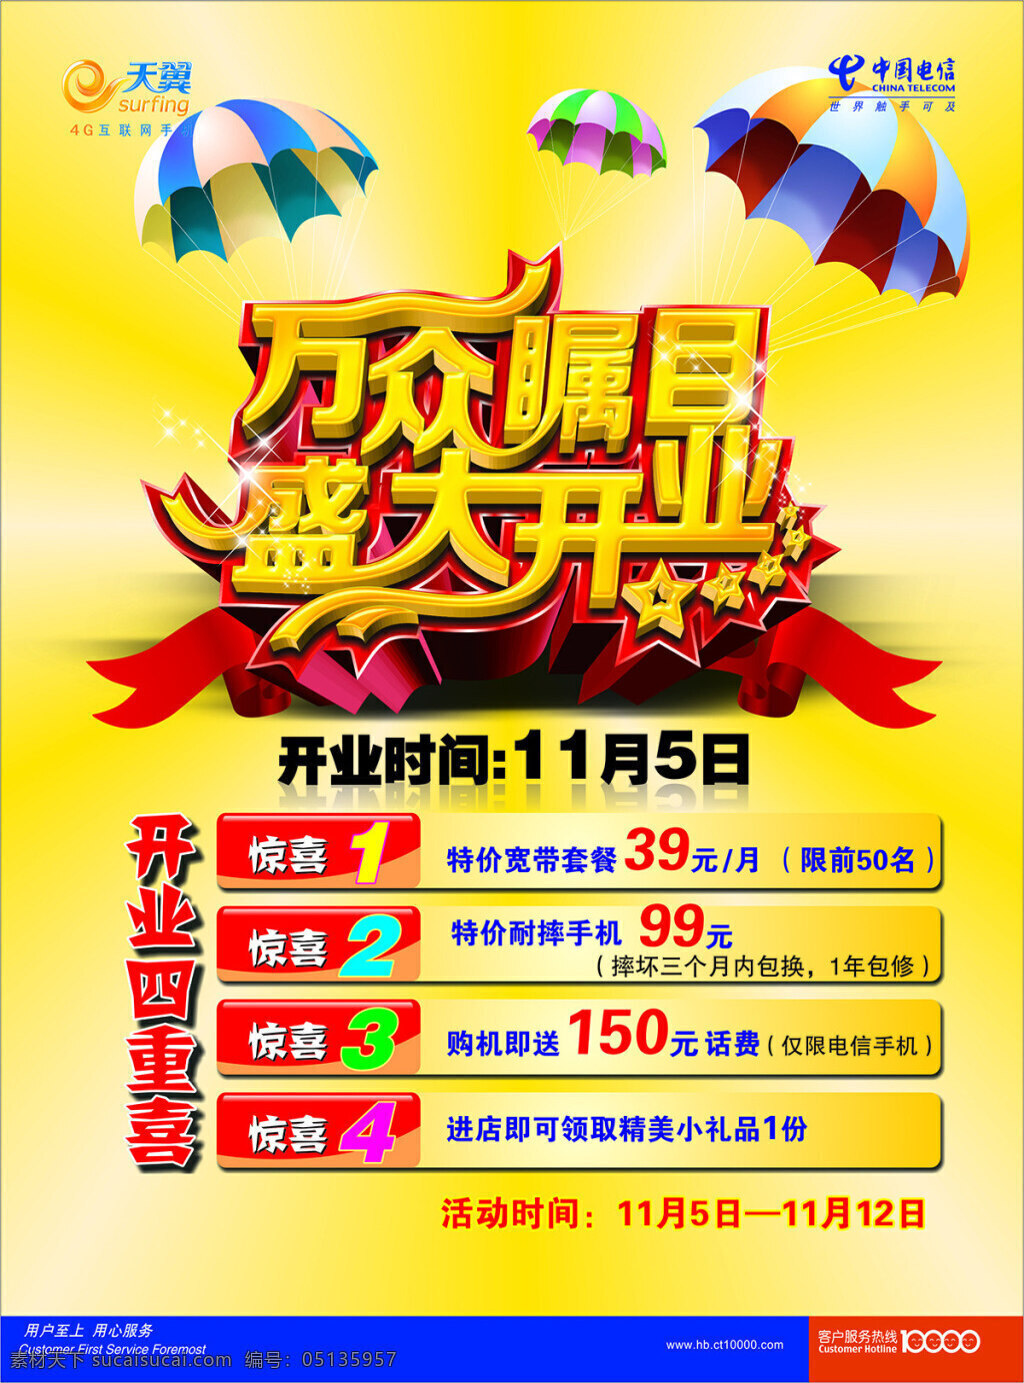 中国电信 盛大 开业 宣传海报 海报 中国电信海报 黄色